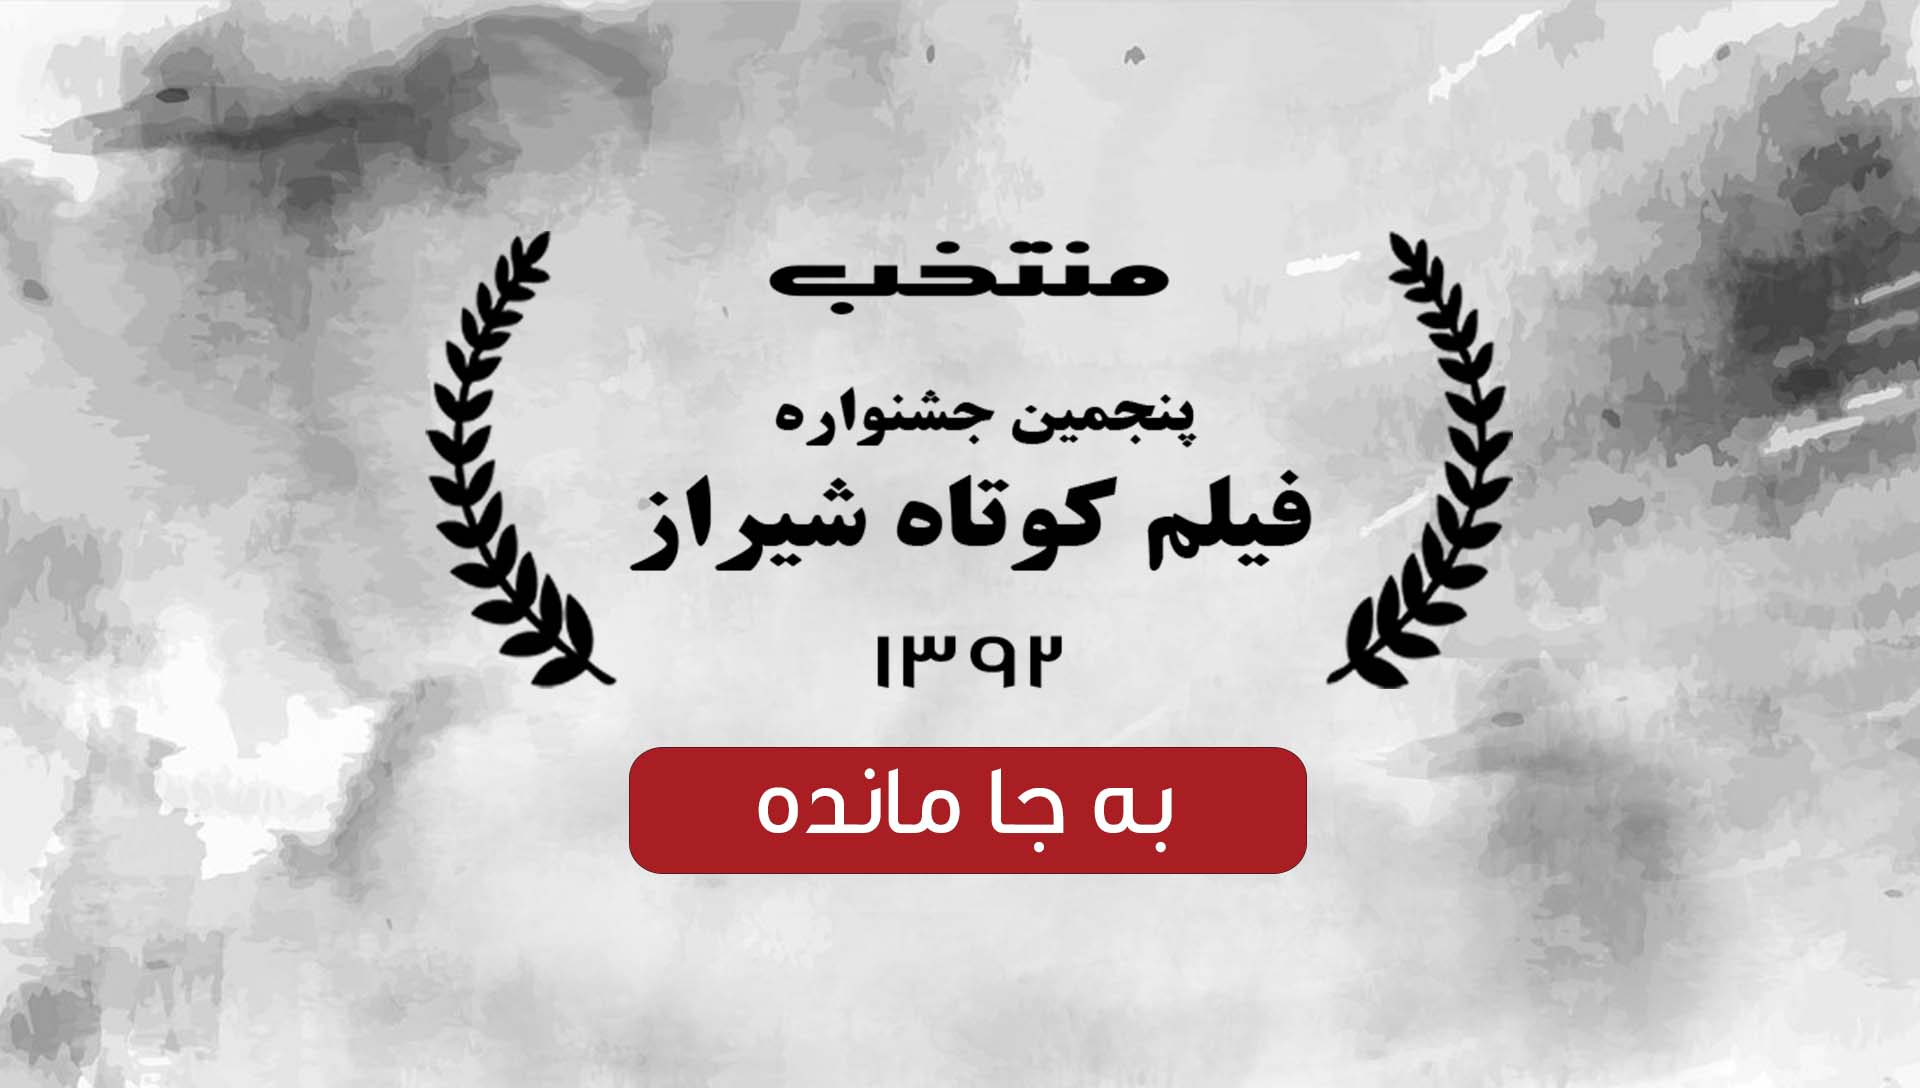 جشنواره فیلم کوتاه شیراز 92 - شرکت فیلم سازی زوم شیراز برادران شریفی